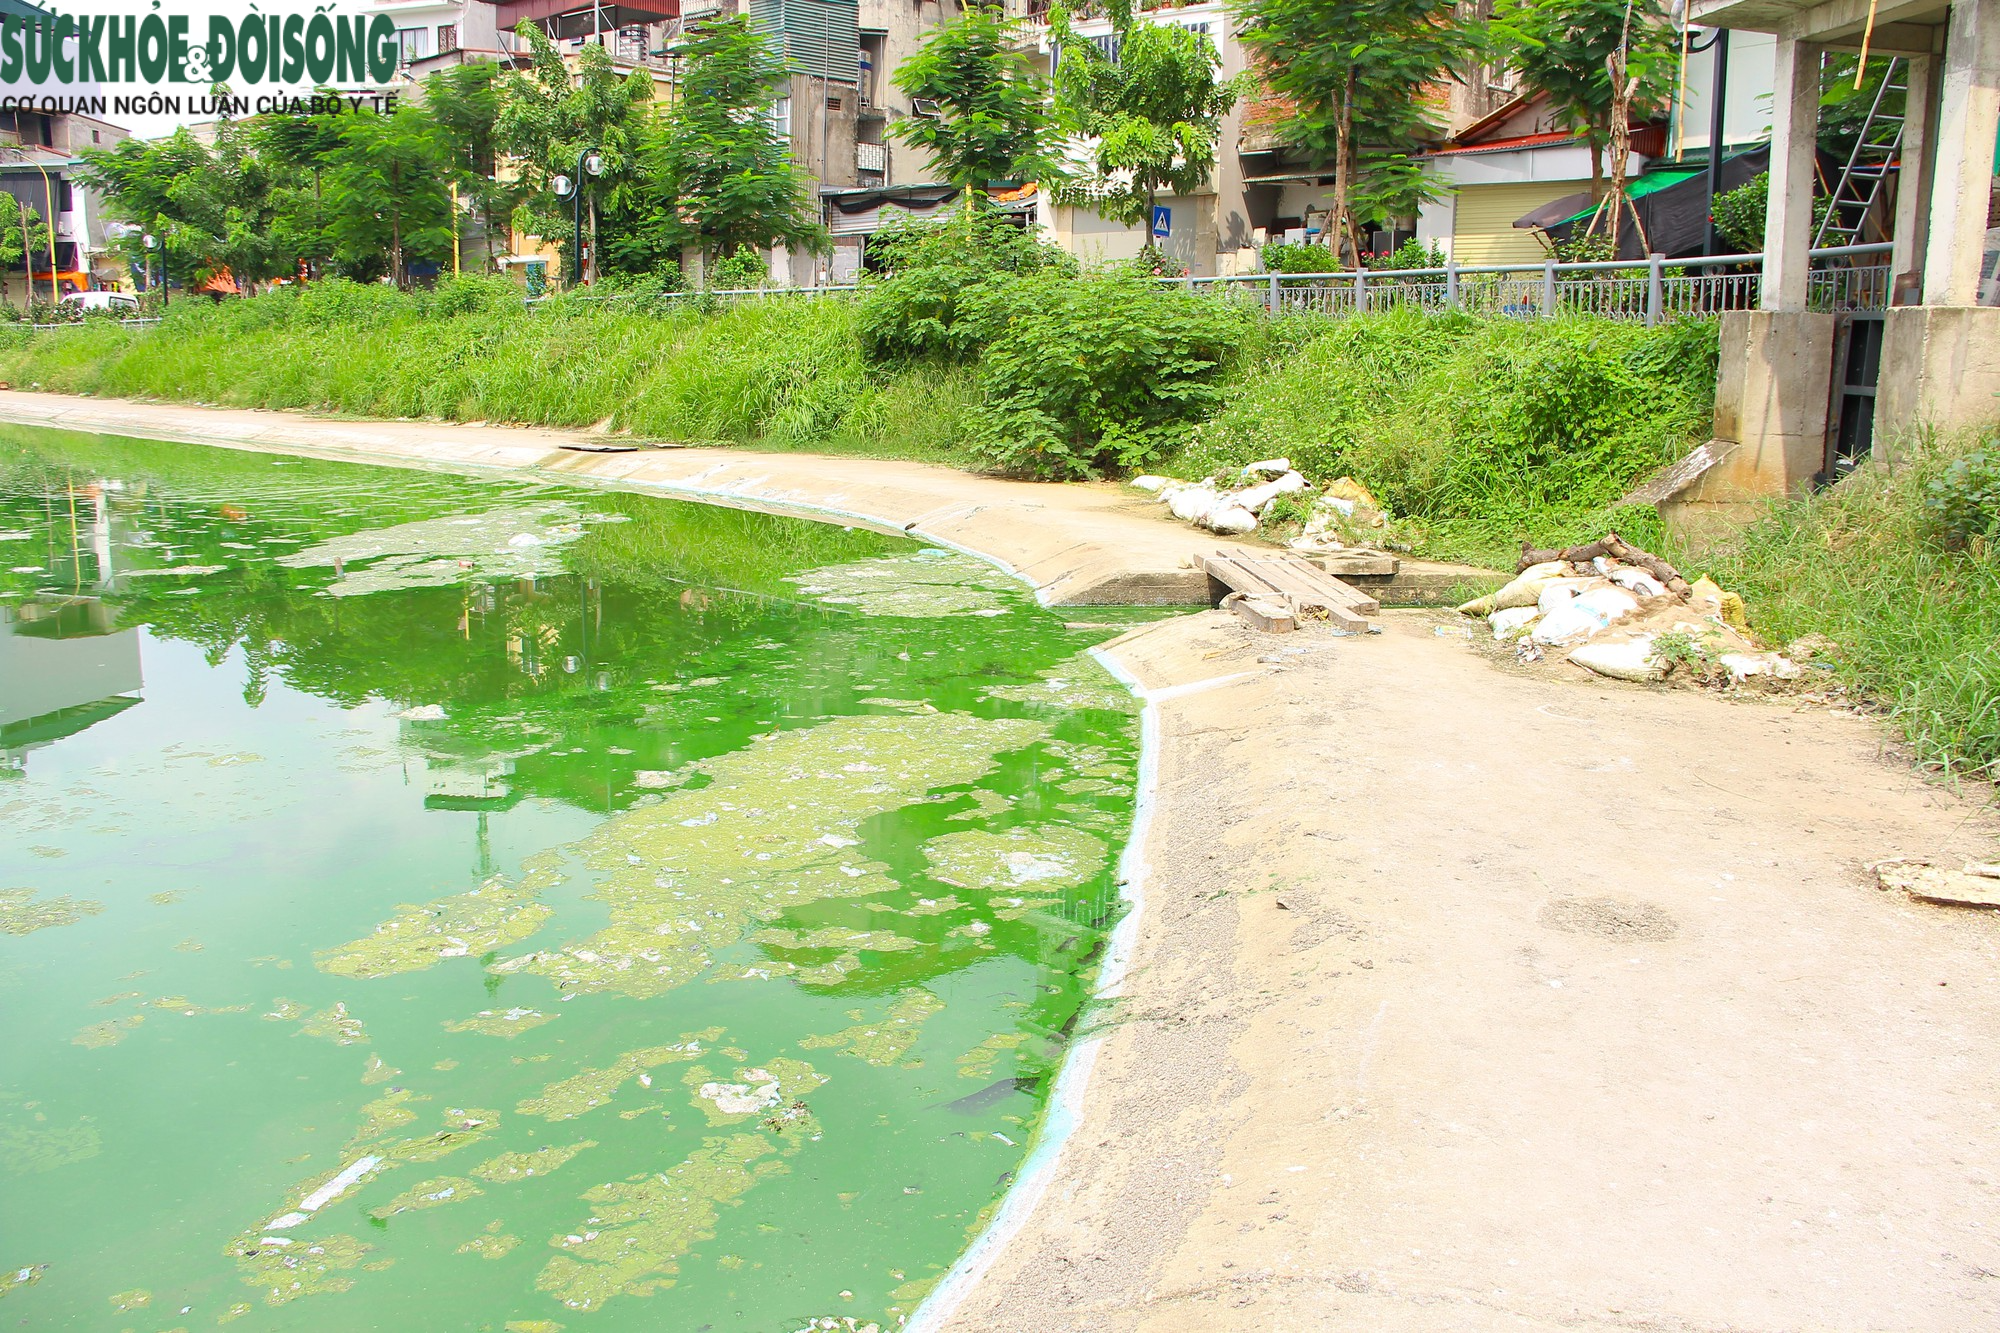 Hồ nước tại trung tâm Hà Nội ô nhiễm, mặt hồ nổi mảng bám, nước bốc mùi - Ảnh 5.